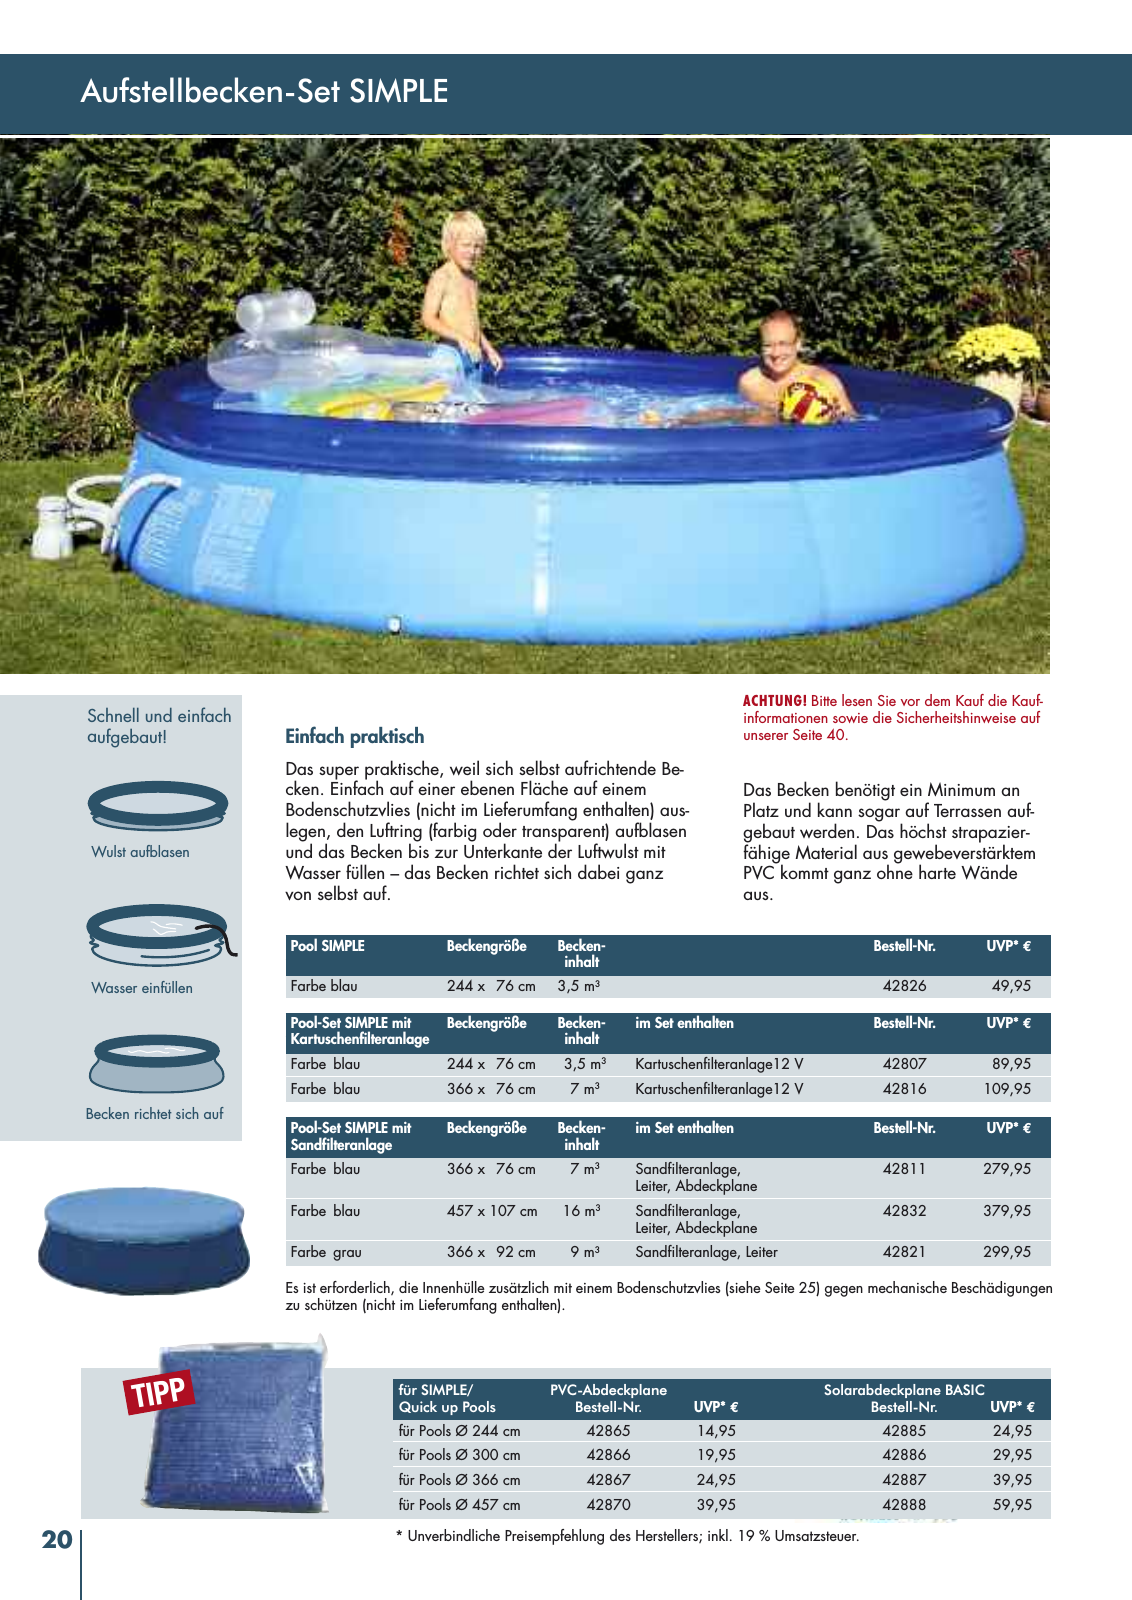 Vorschau myPool Schwimmbadkatalog 2016 Seite 20